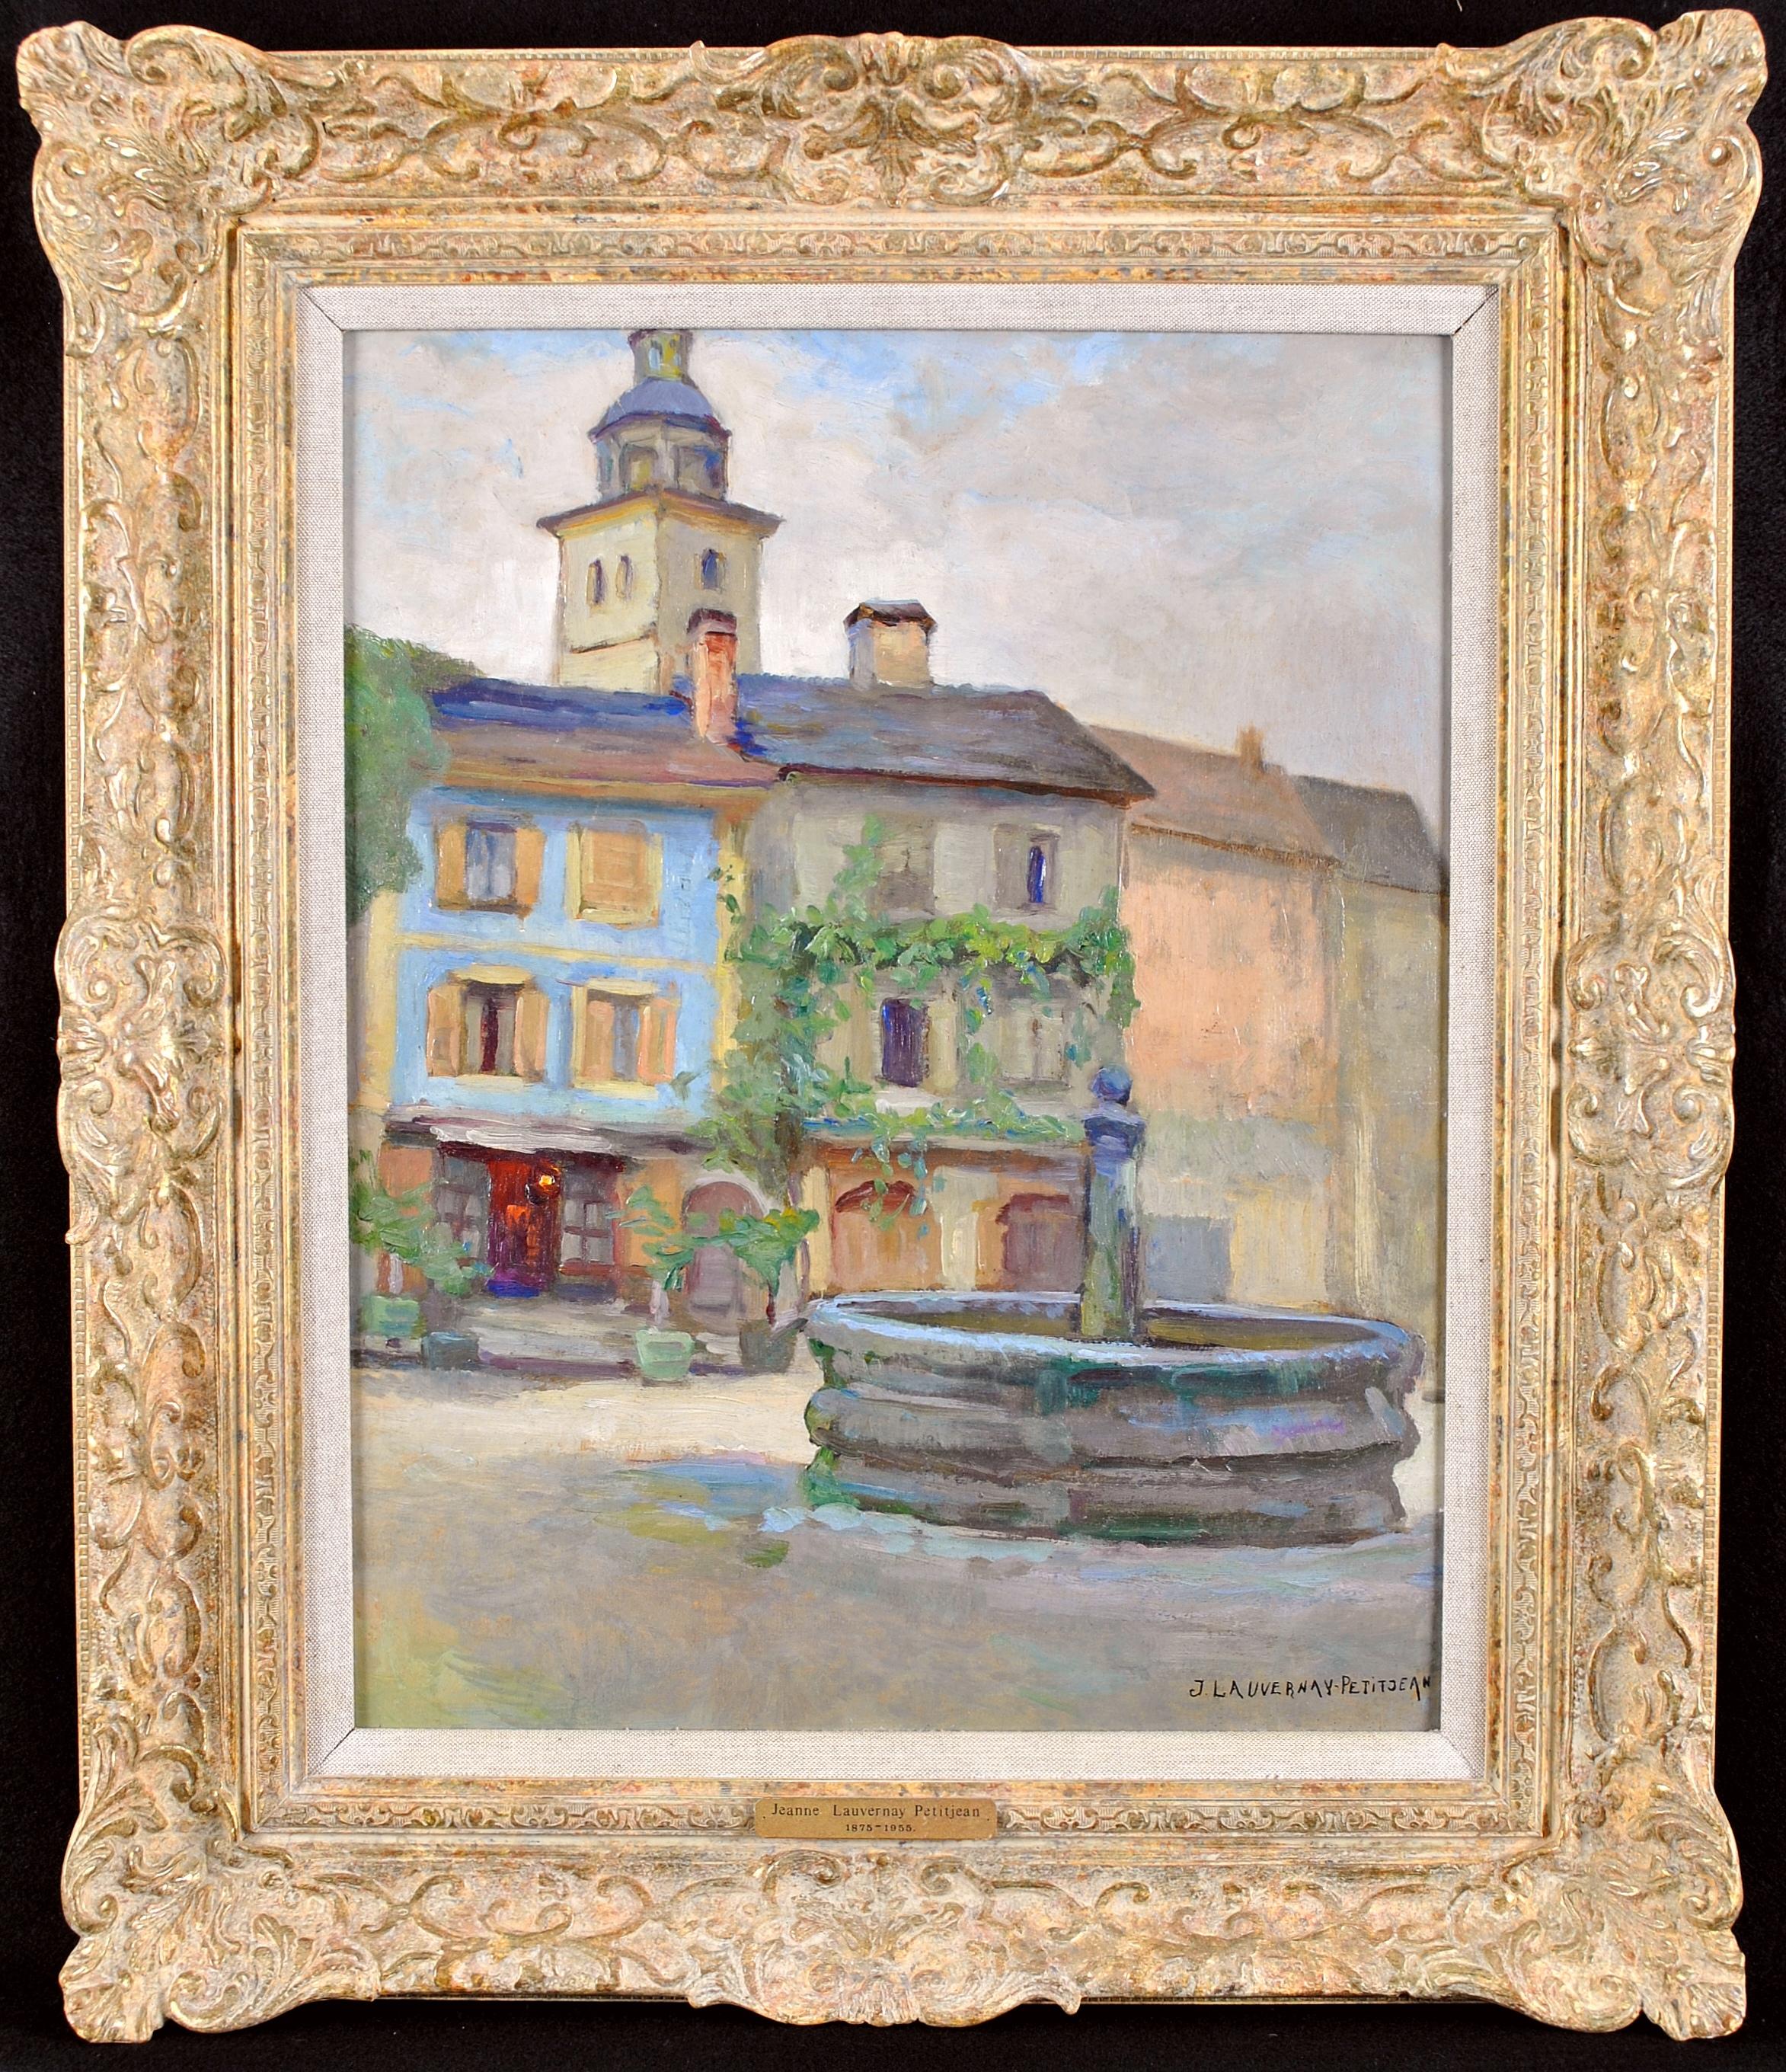 Jeanne Lauvernay-Pettitjean Landscape Painting - Le Puits - 20th Century French Impressionist Village Landscape Oil Painting